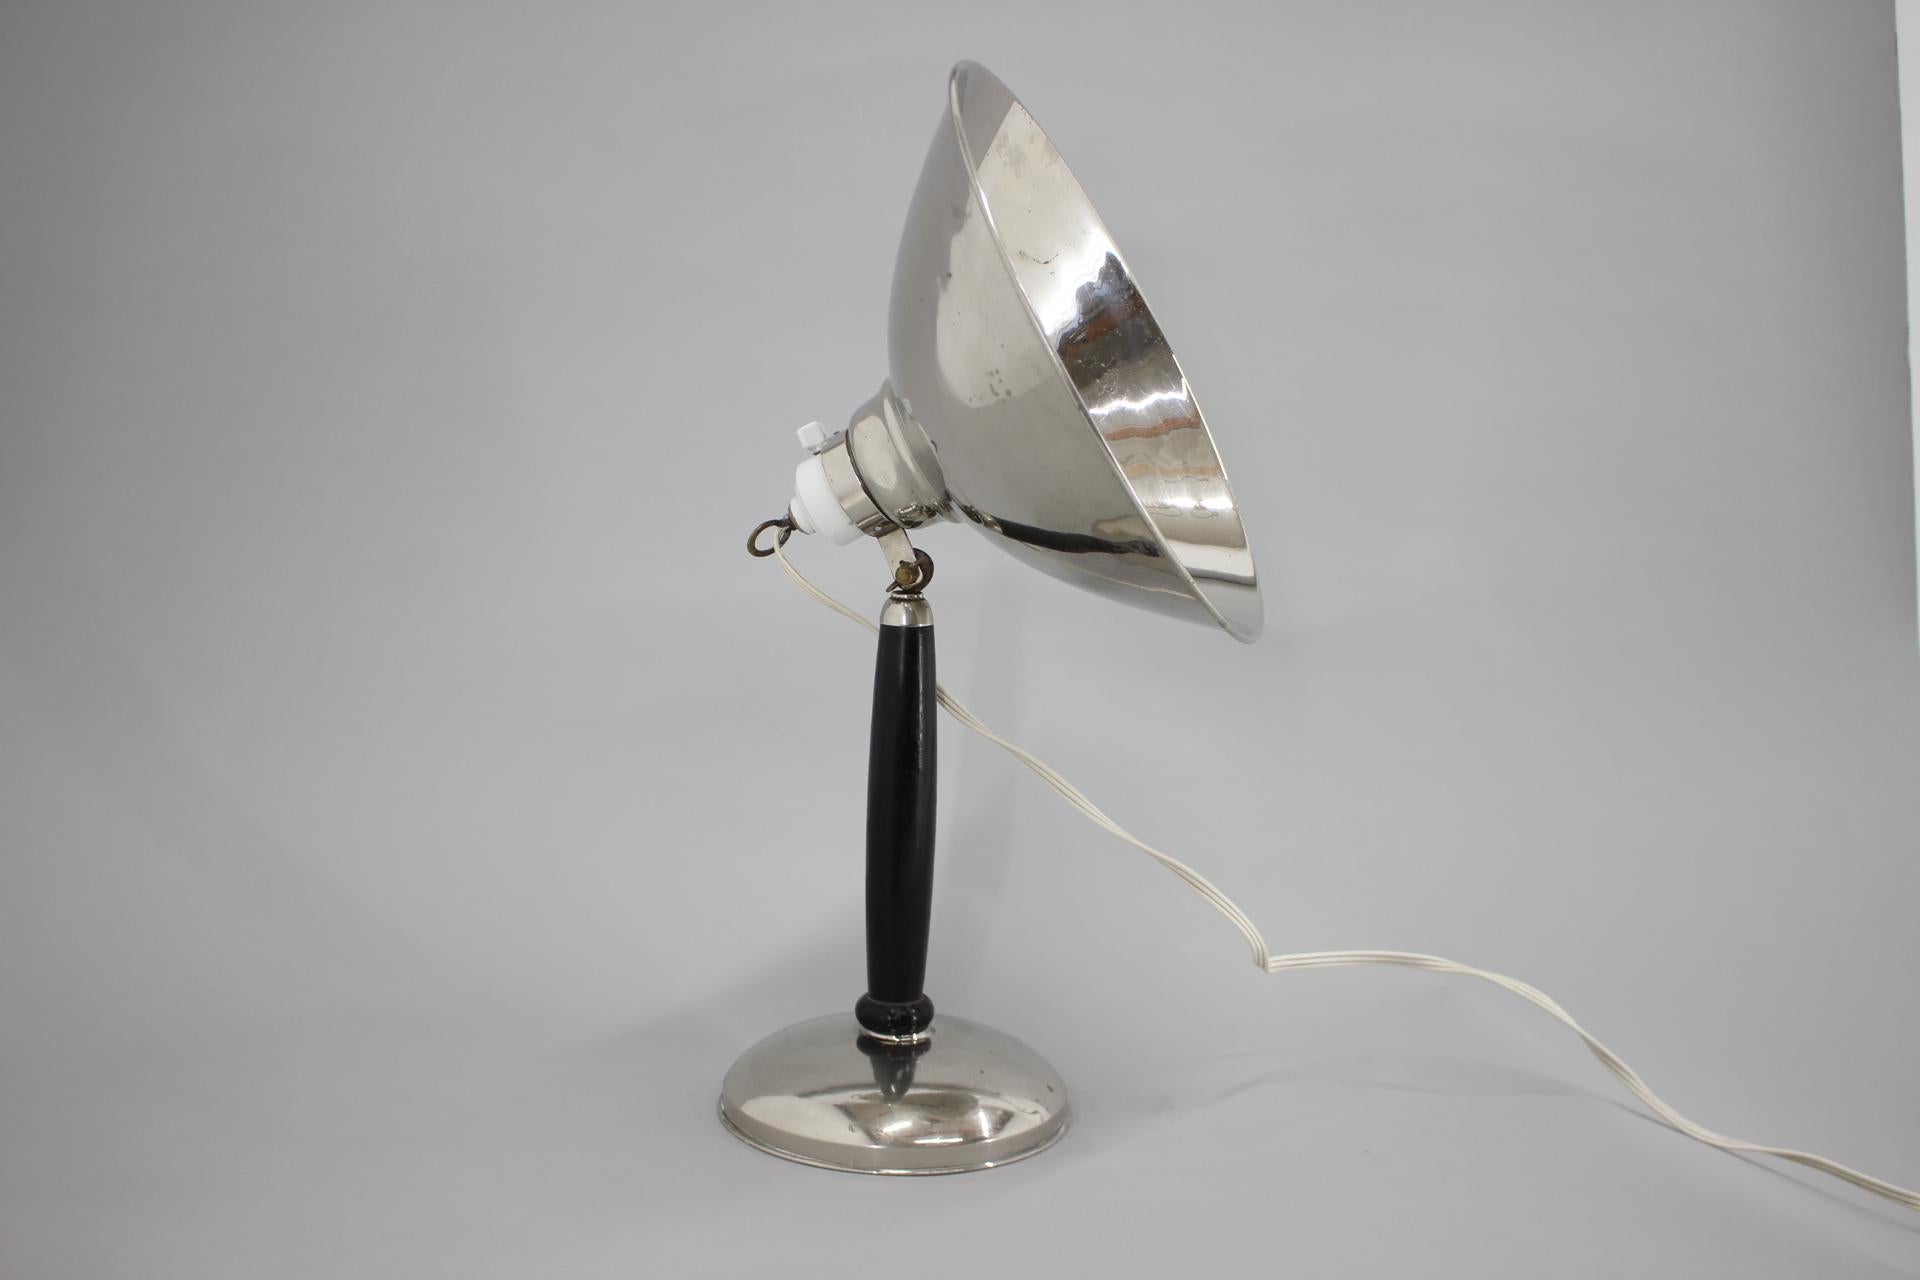 Vintage industrielle Tischlampe in Chrom mit Holzbein. Die Lampe hat einen originalen Keramikschalter (siehe Foto). Die Richtung des Schattens kann eingestellt werden. Glühbirnen: 1 x E26-E27. Inklusive US-Steckeradapter.